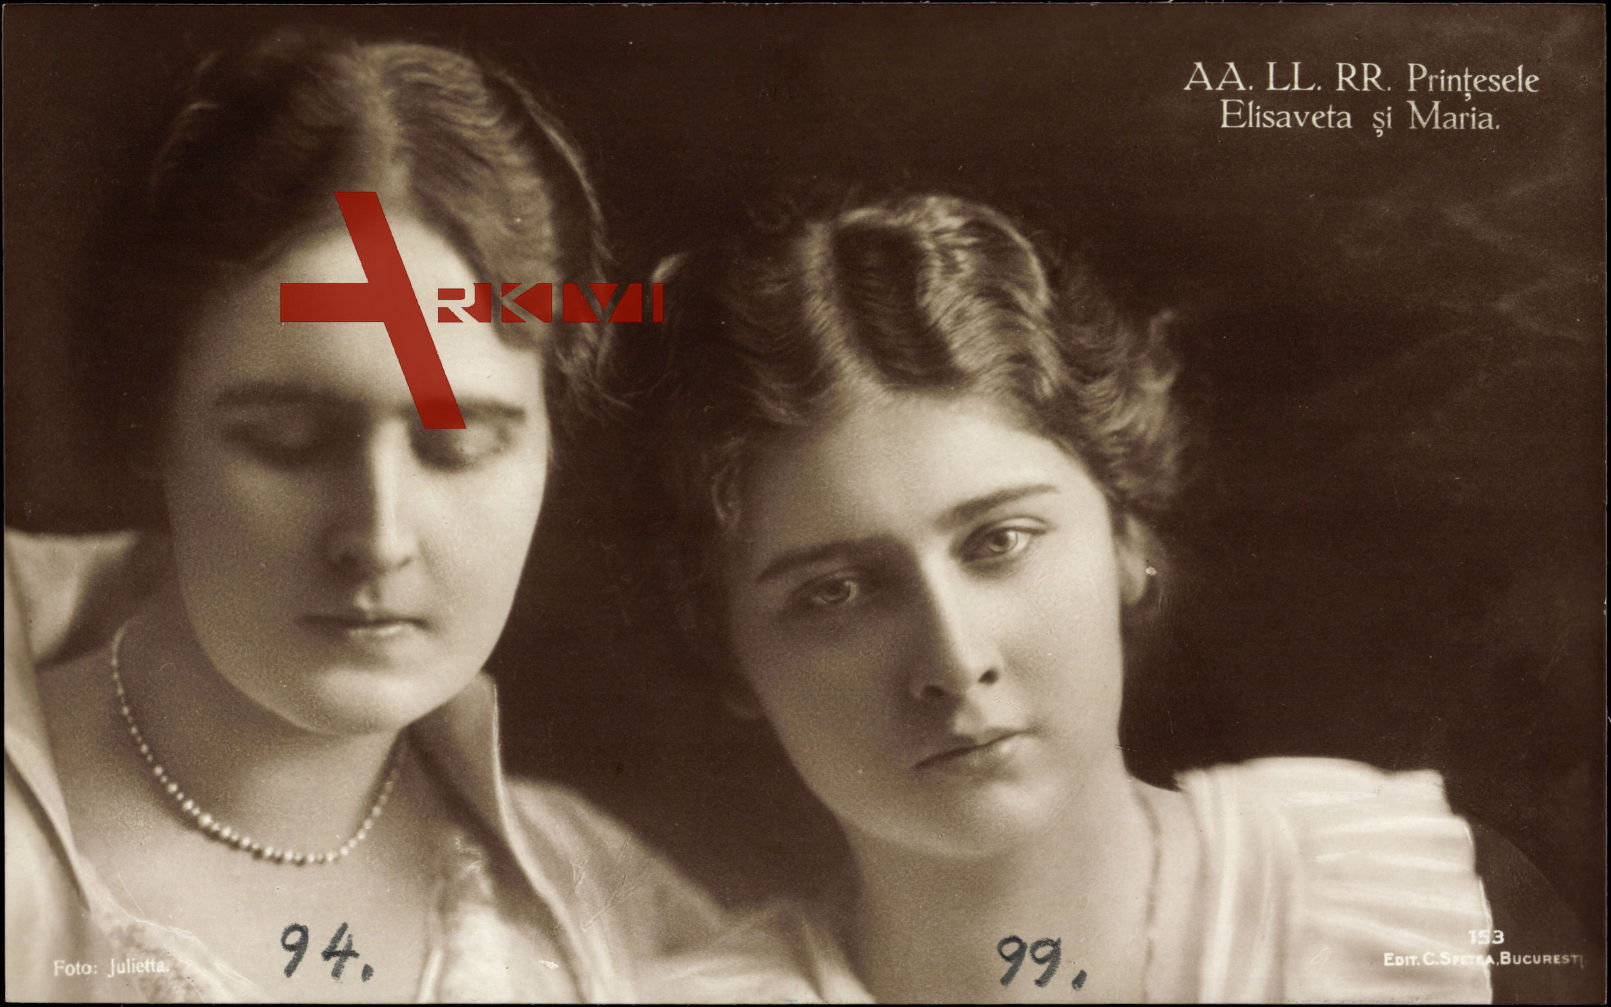 A.A. L.L. R.R. Printesele Elisaveta si Maria, Prinzessinnen von Rumänien